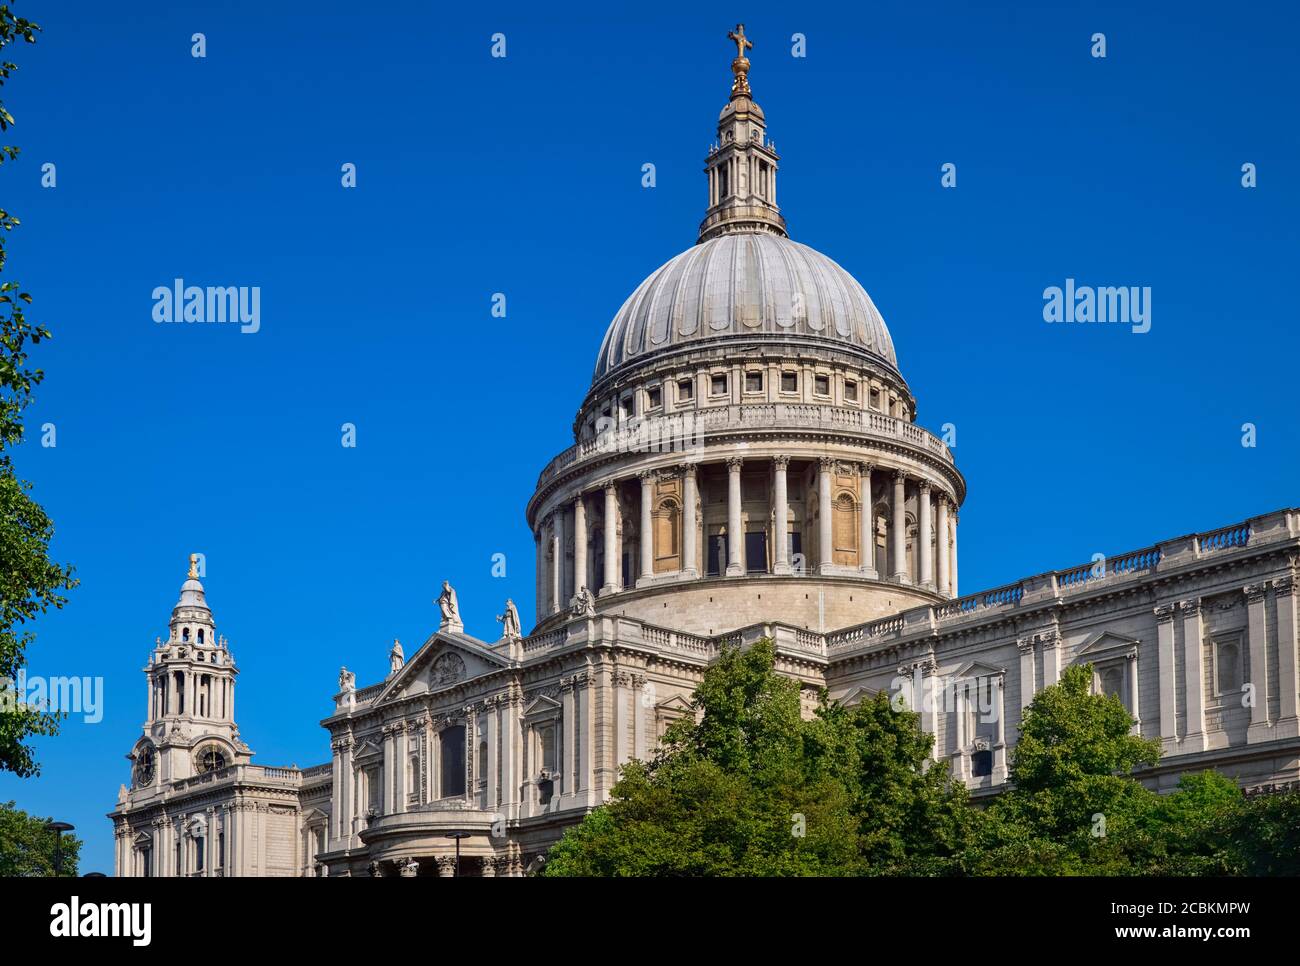 Angleterre, Londres, dôme de la cathédrale Saint-Paul. Banque D'Images